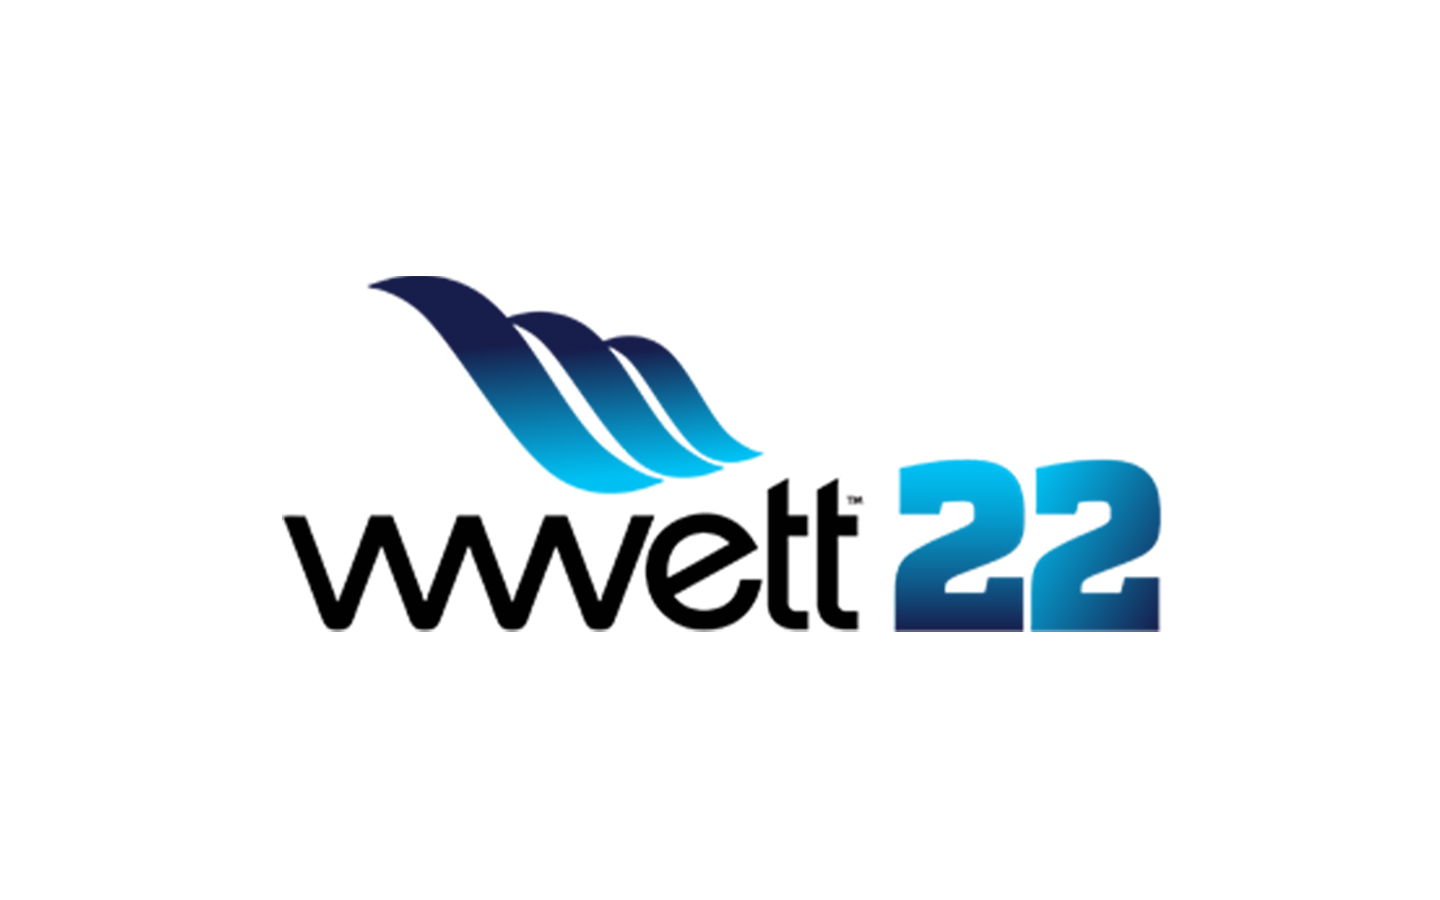 WWETT 2022 Cappellotto Spa